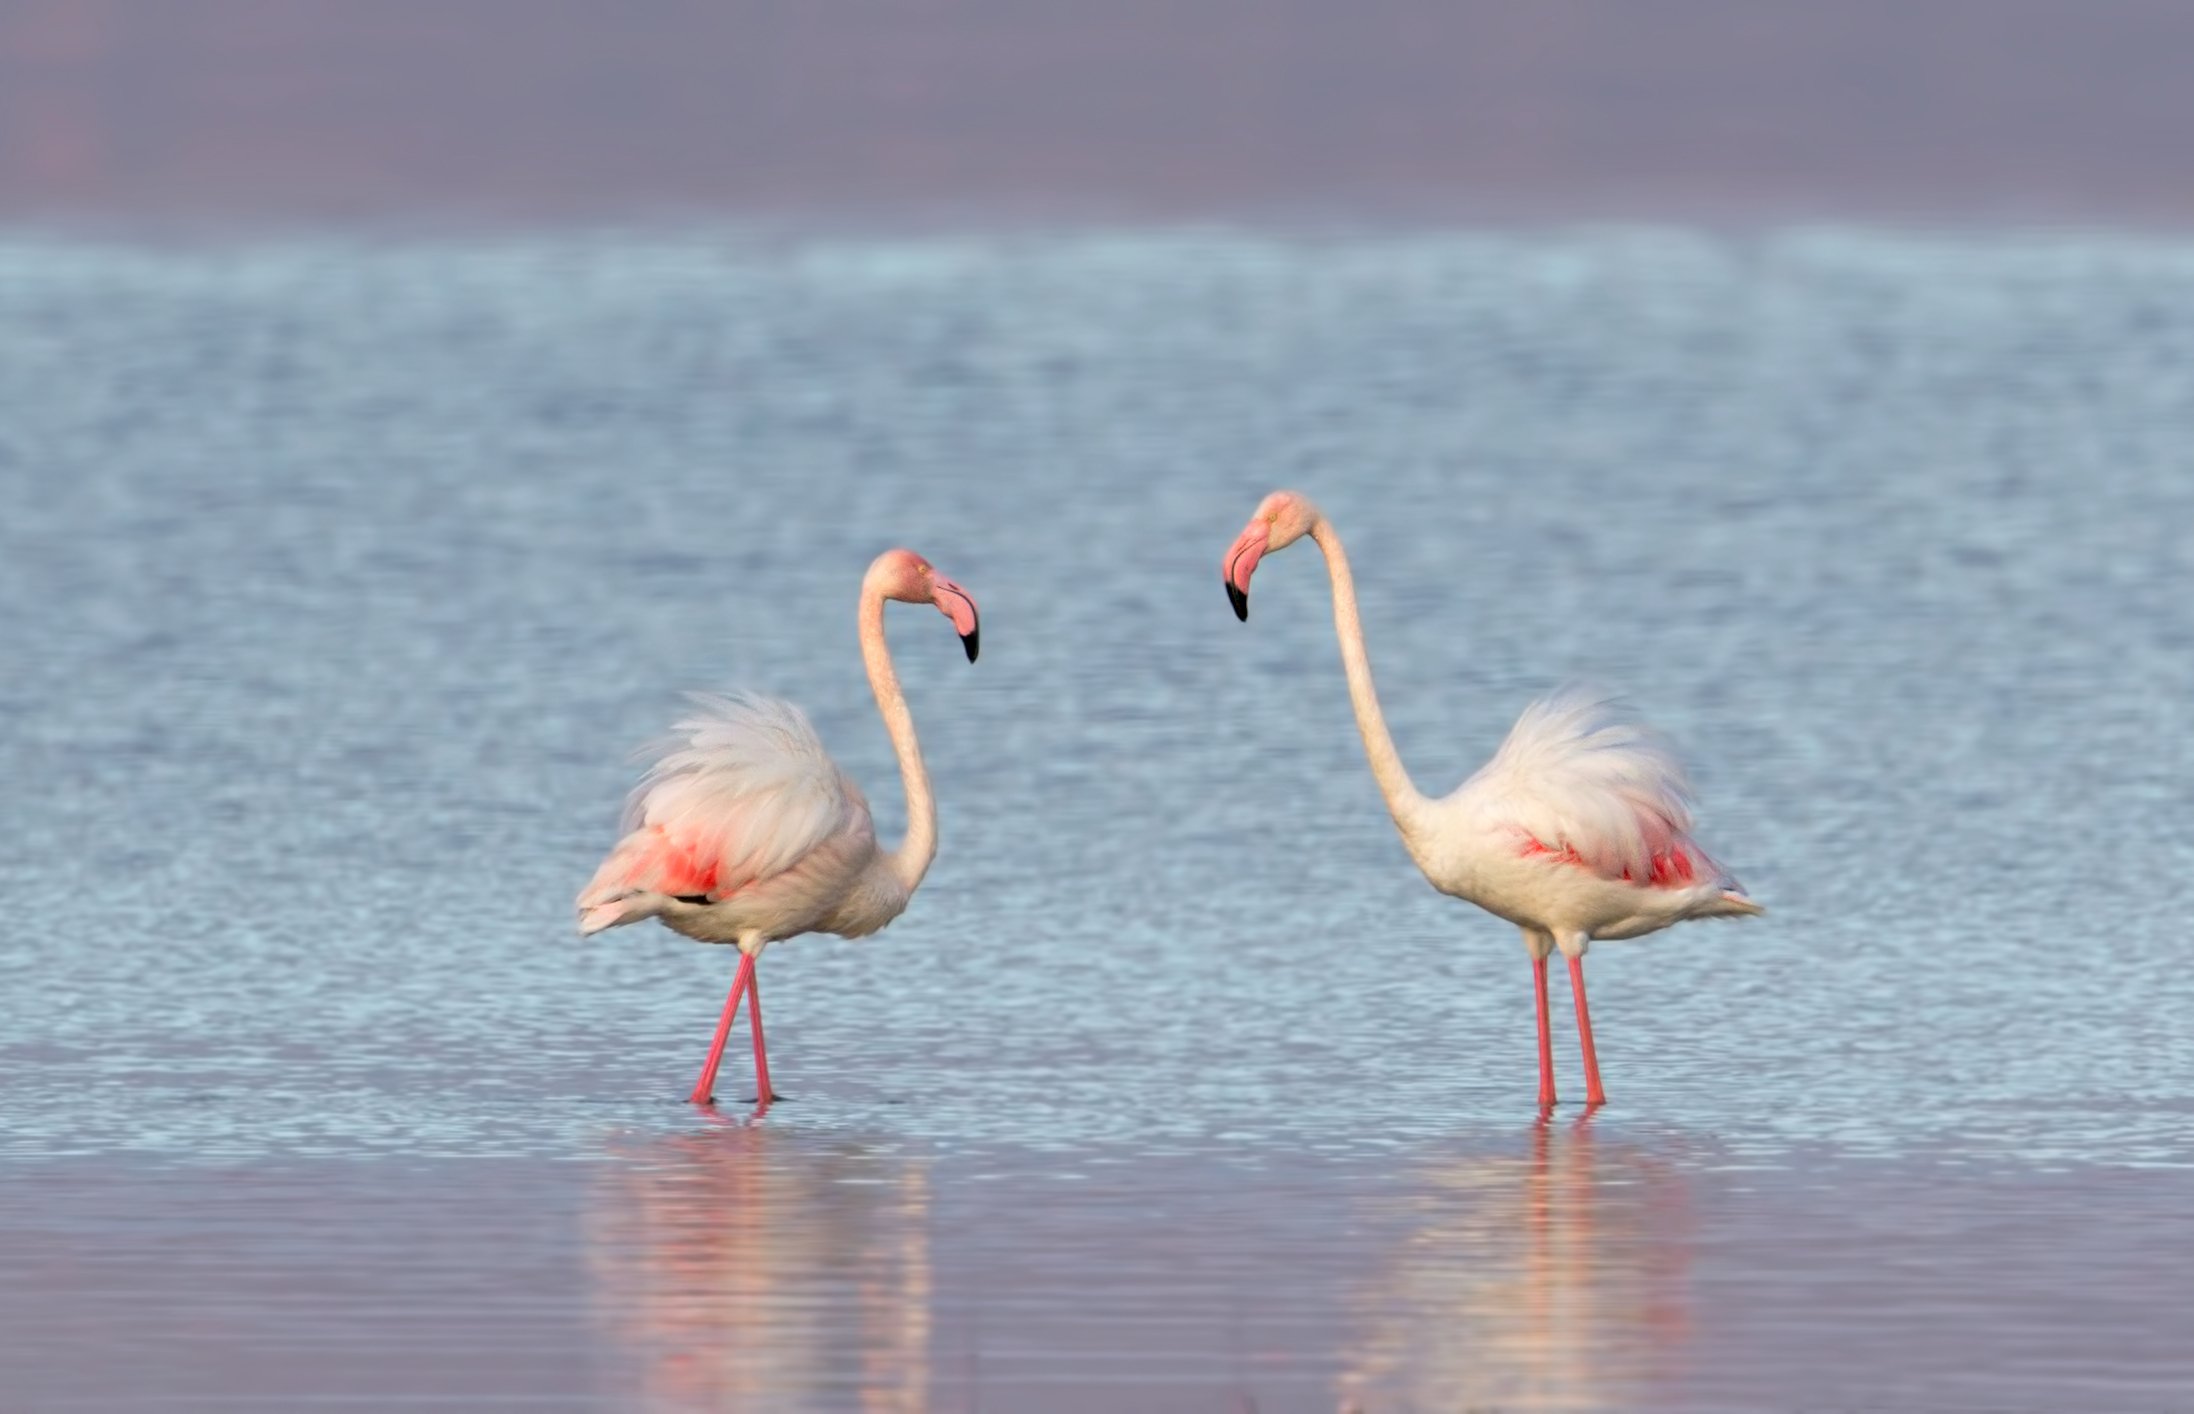 greater flamingo, phoenicopterus roseus, розовый фламинго, Ivan Ivanov